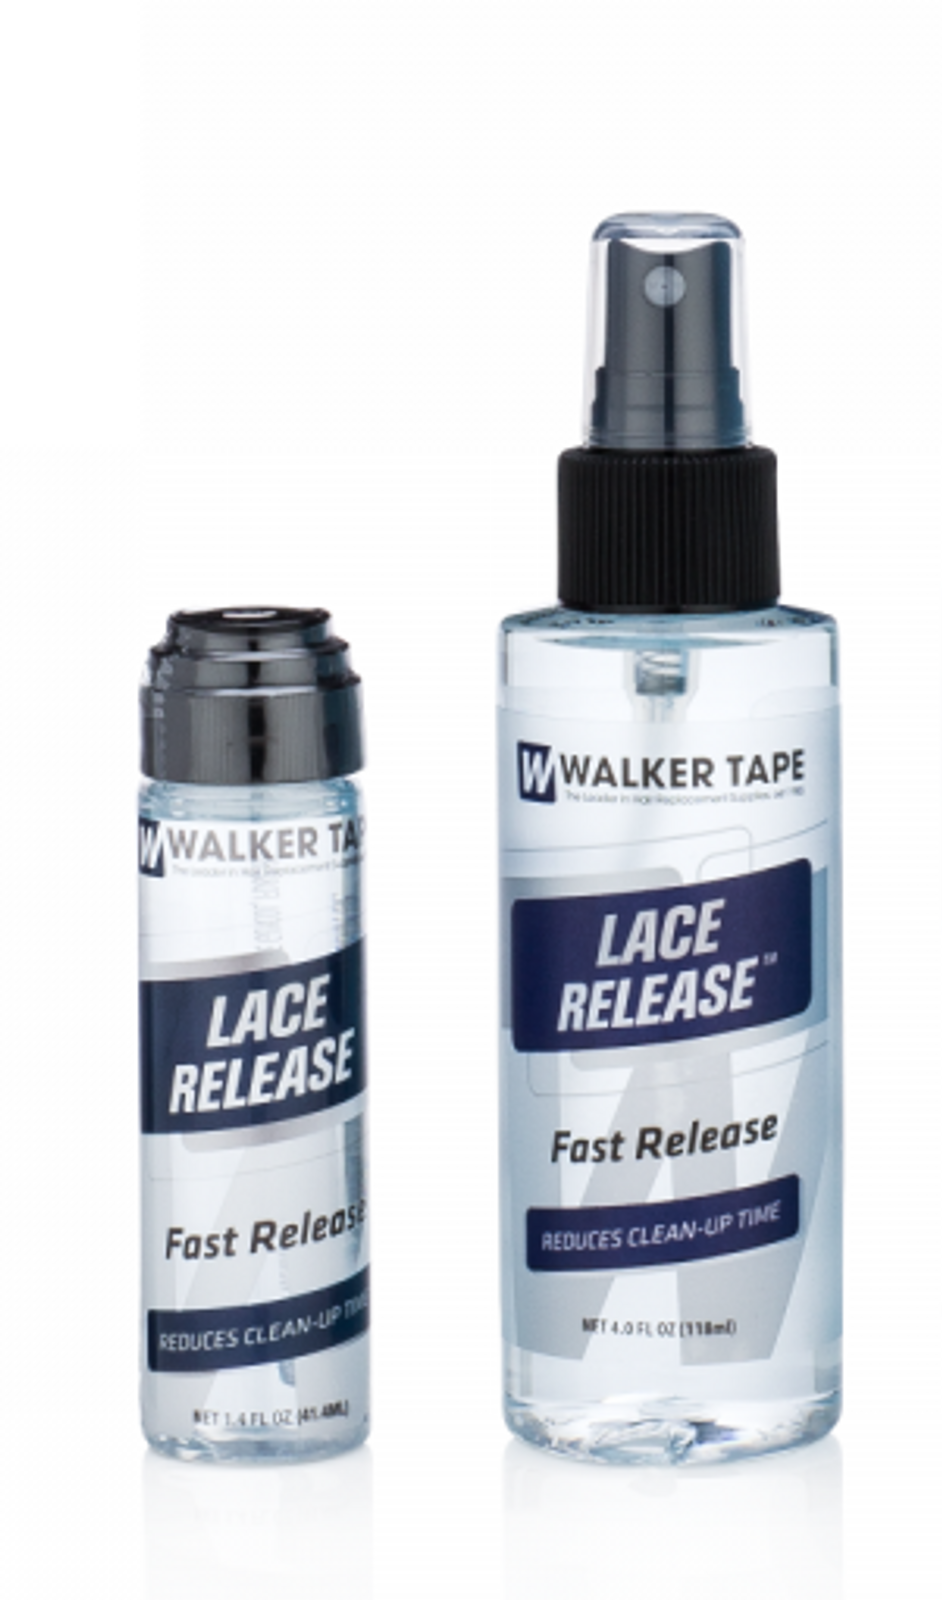 Walker Tape Lace Release - 1.4 oz